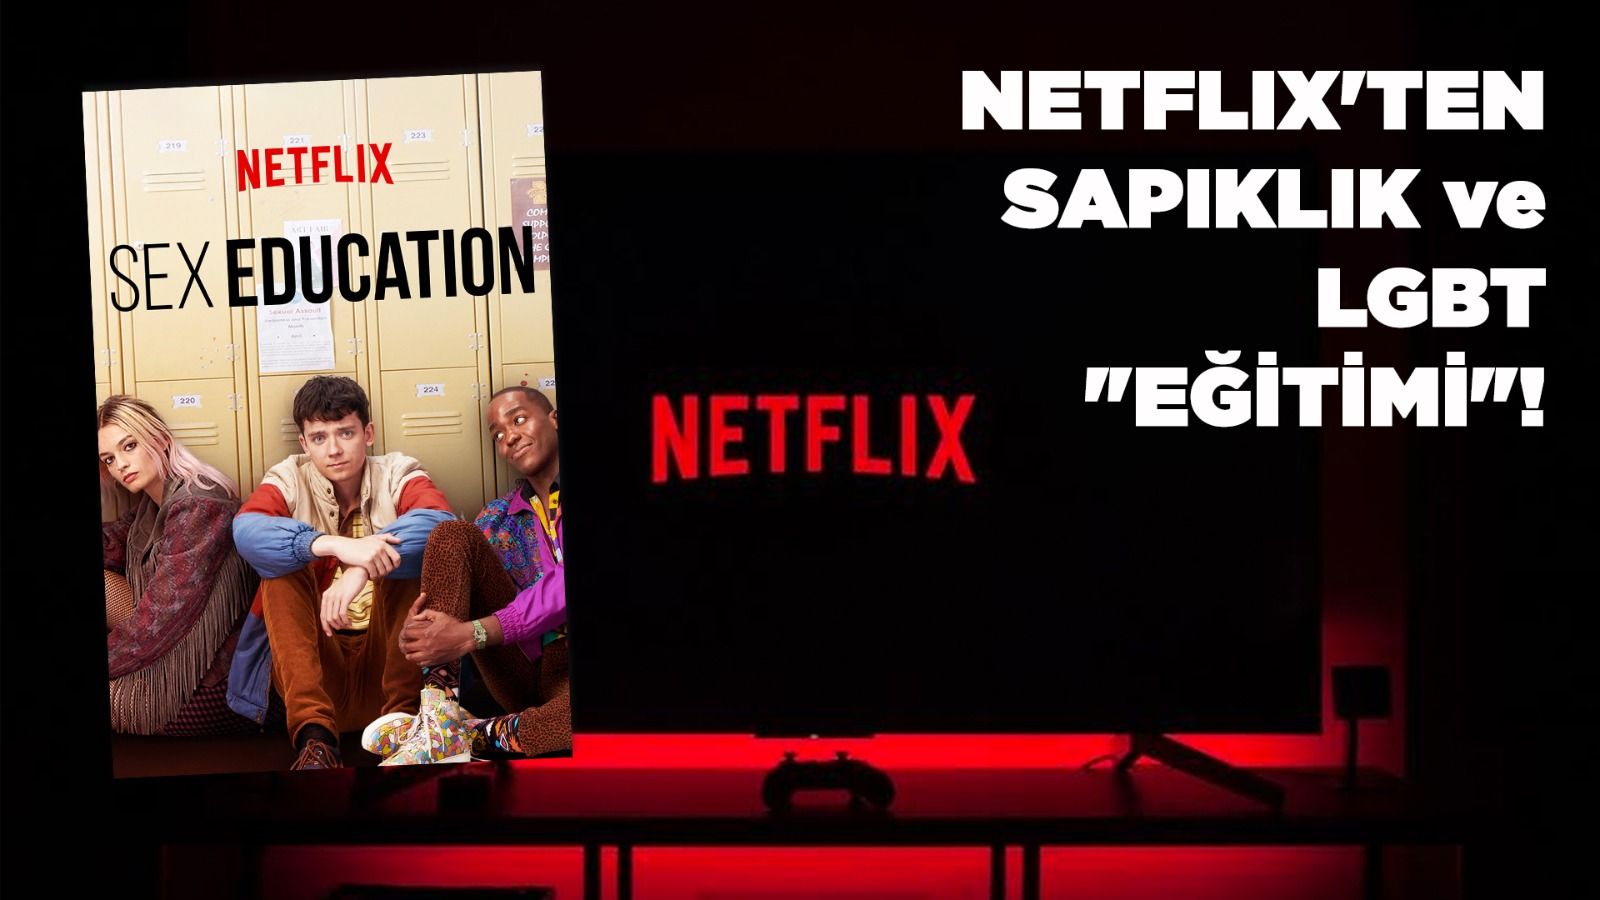 Türkiye Liseliler Birliği'nden Netflix'in sapıklık eğitimine tepki: “AHLAKSIZLIK BU DEĞİLSE NE?”